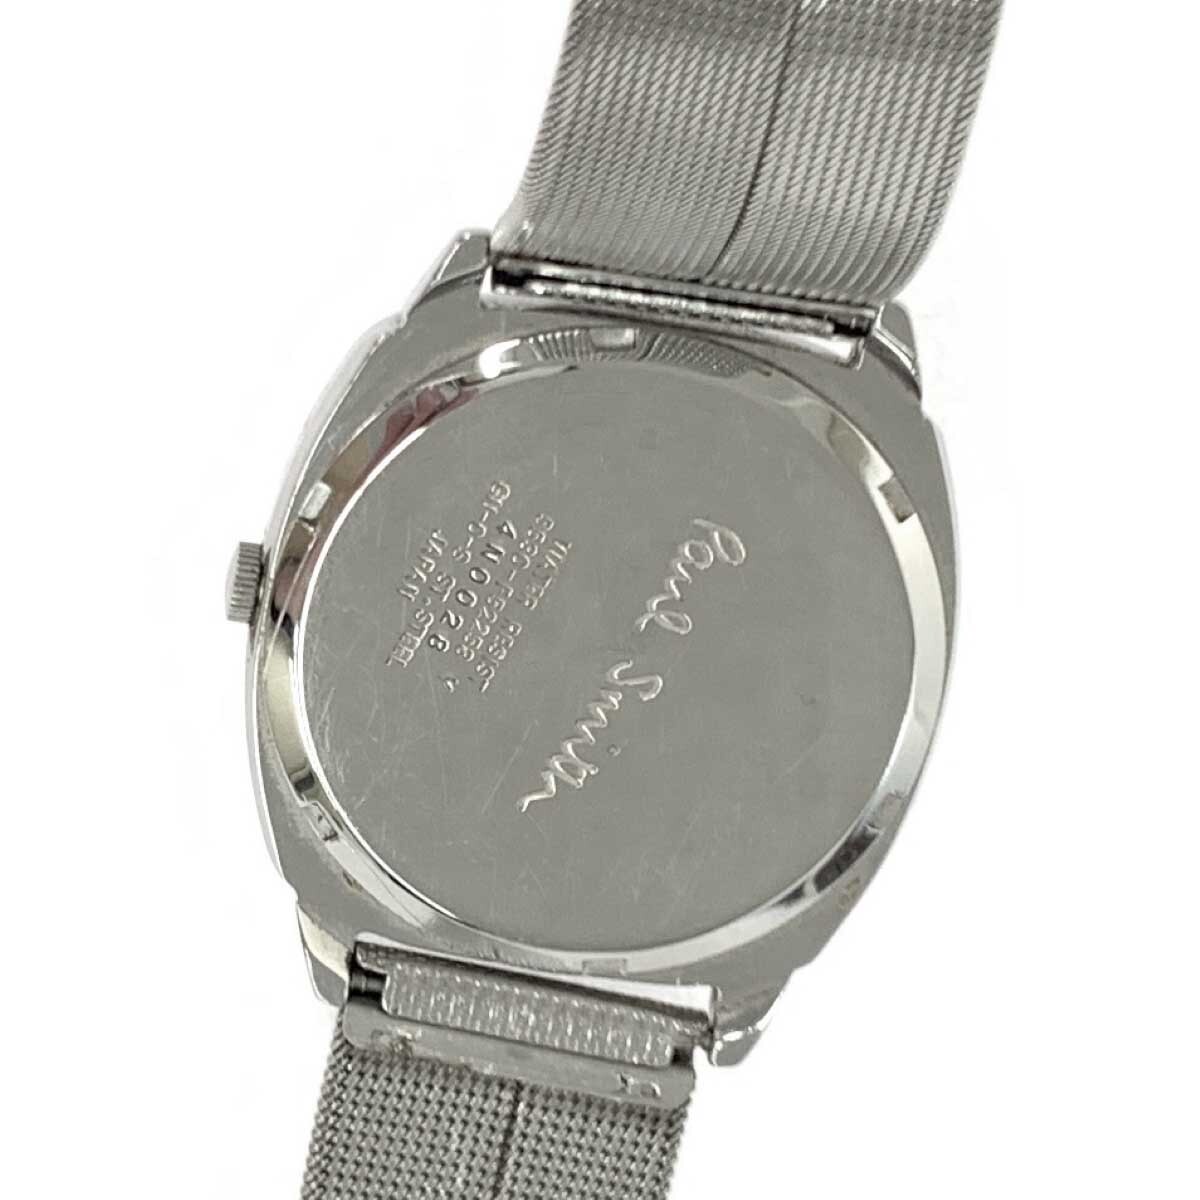 ◆Paul Smith collection ポールスミス コレクション 腕時計 クォーツ◆5530-F52258 シルバーカラー SS レディース ウォッチ watch_画像6